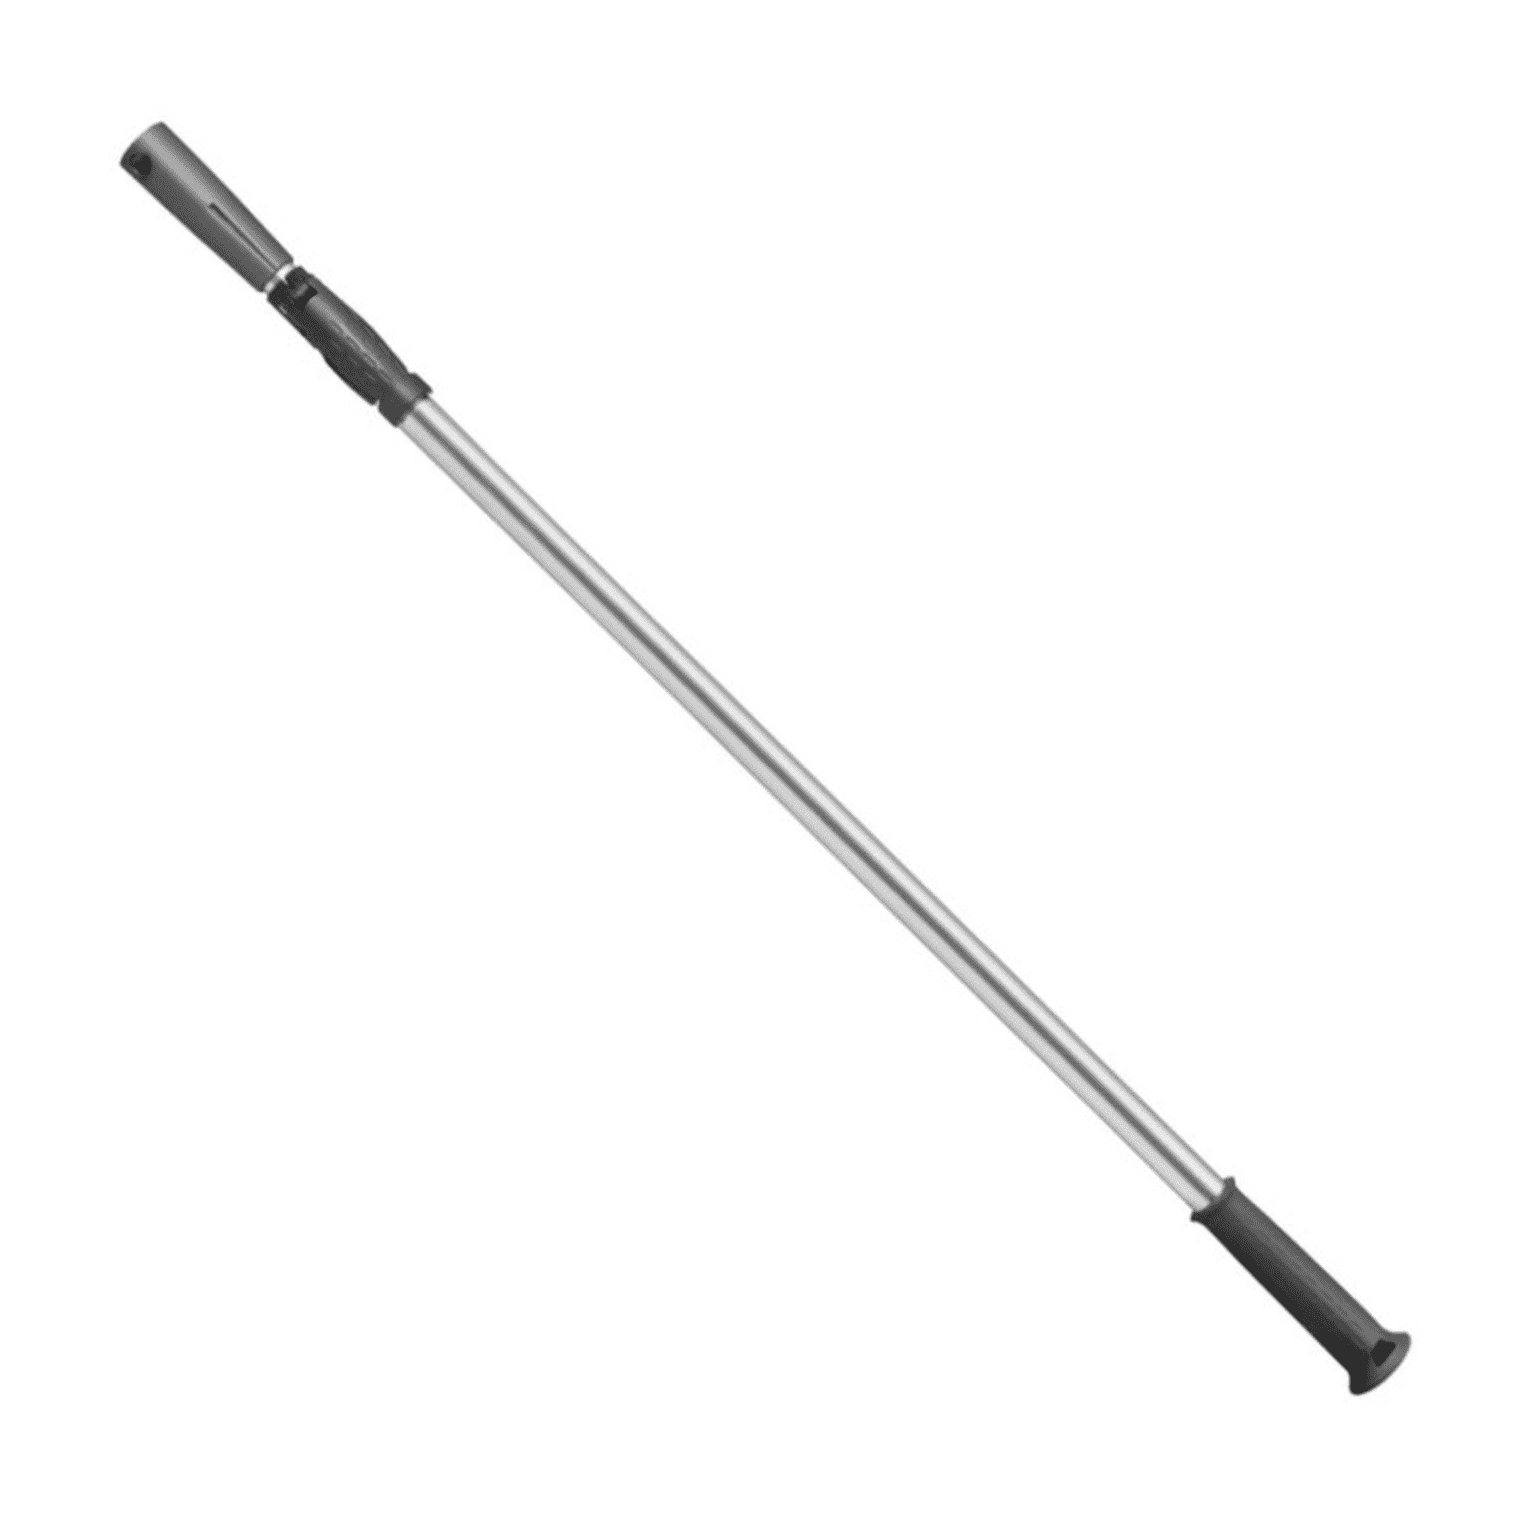 Extension pole for decoliss spatulas - 2 x 1.5 m - 2 x 1.5 m